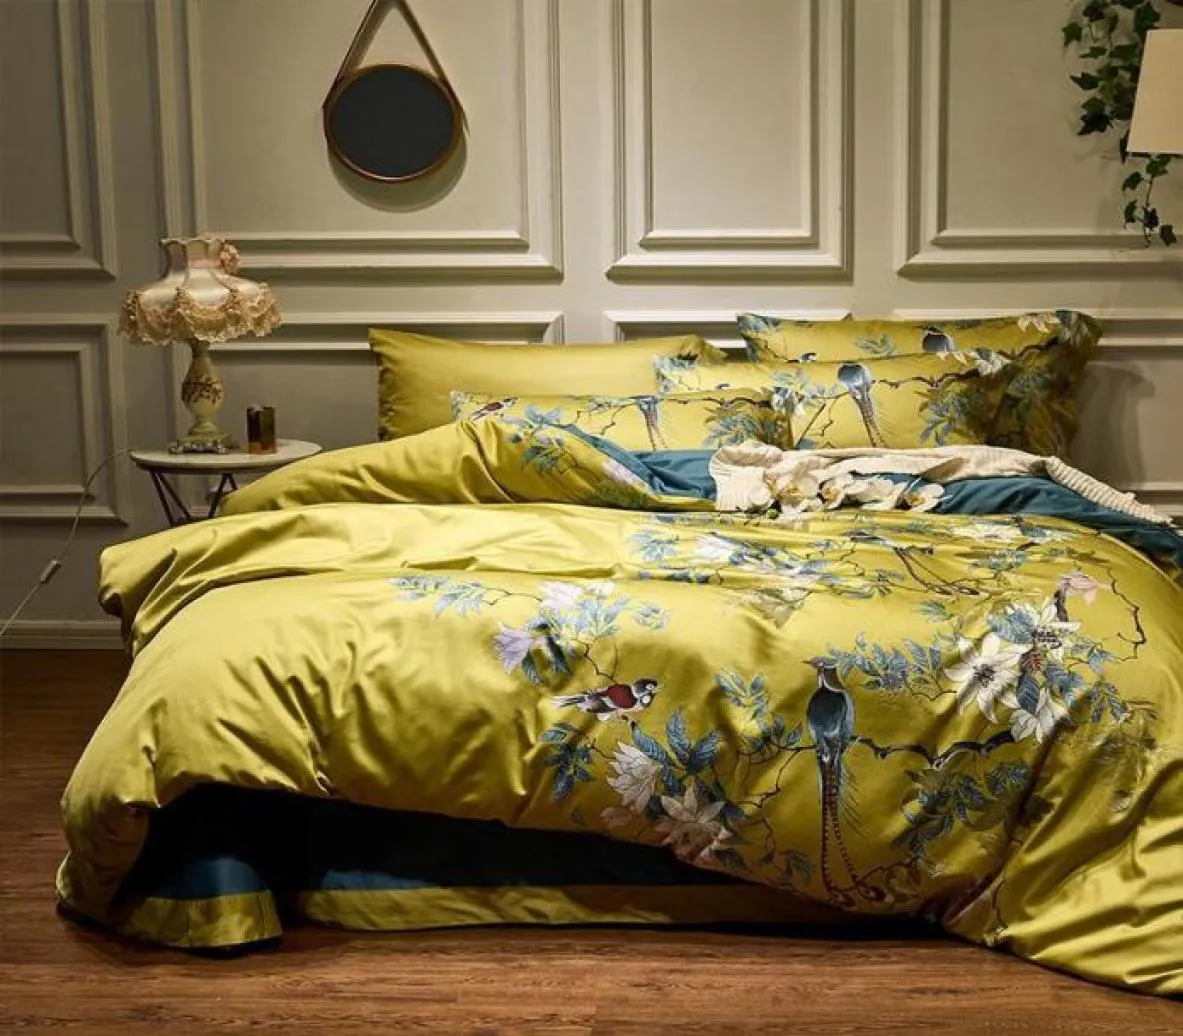 4pcs sedosos algodão egípcio amarelo chinoiserie estilo pássaros flores de edredão lençol lençol equipado conjunto king size size size s99349996